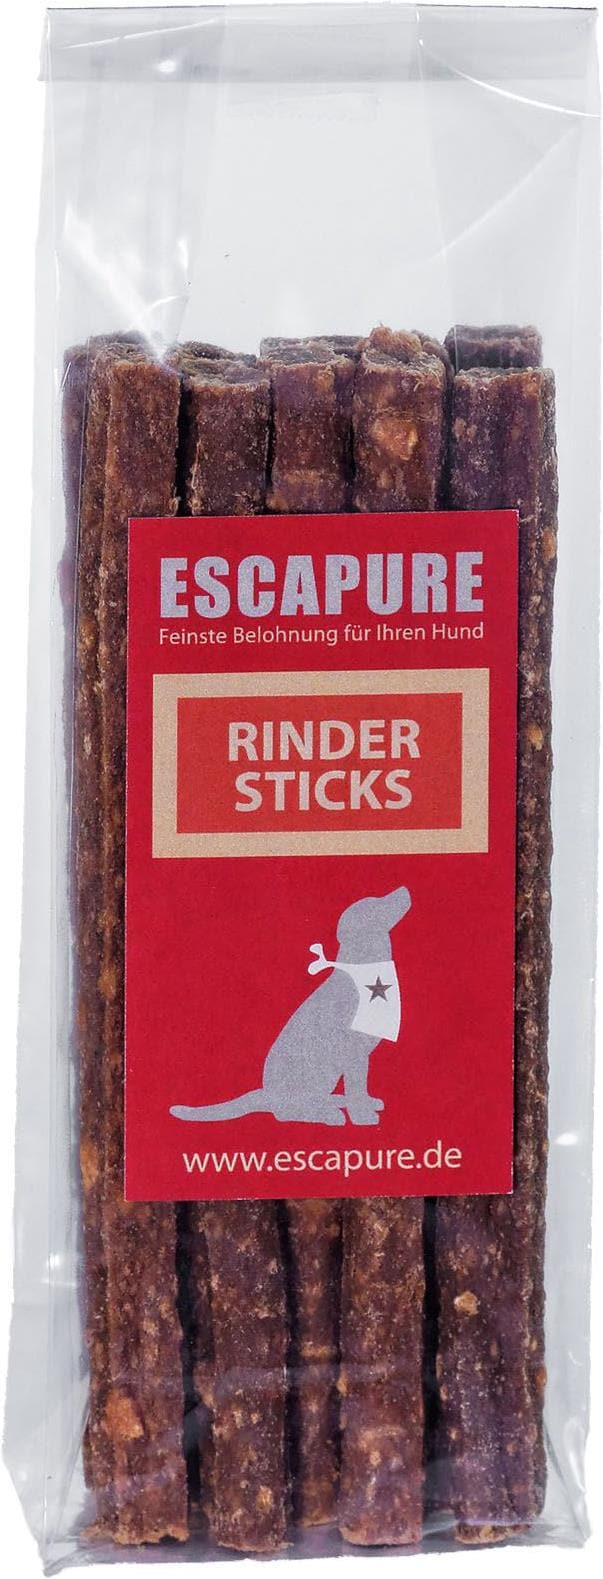 Escapure Rinder Sticks (Adult 1 Stk. 80 g) kaufen